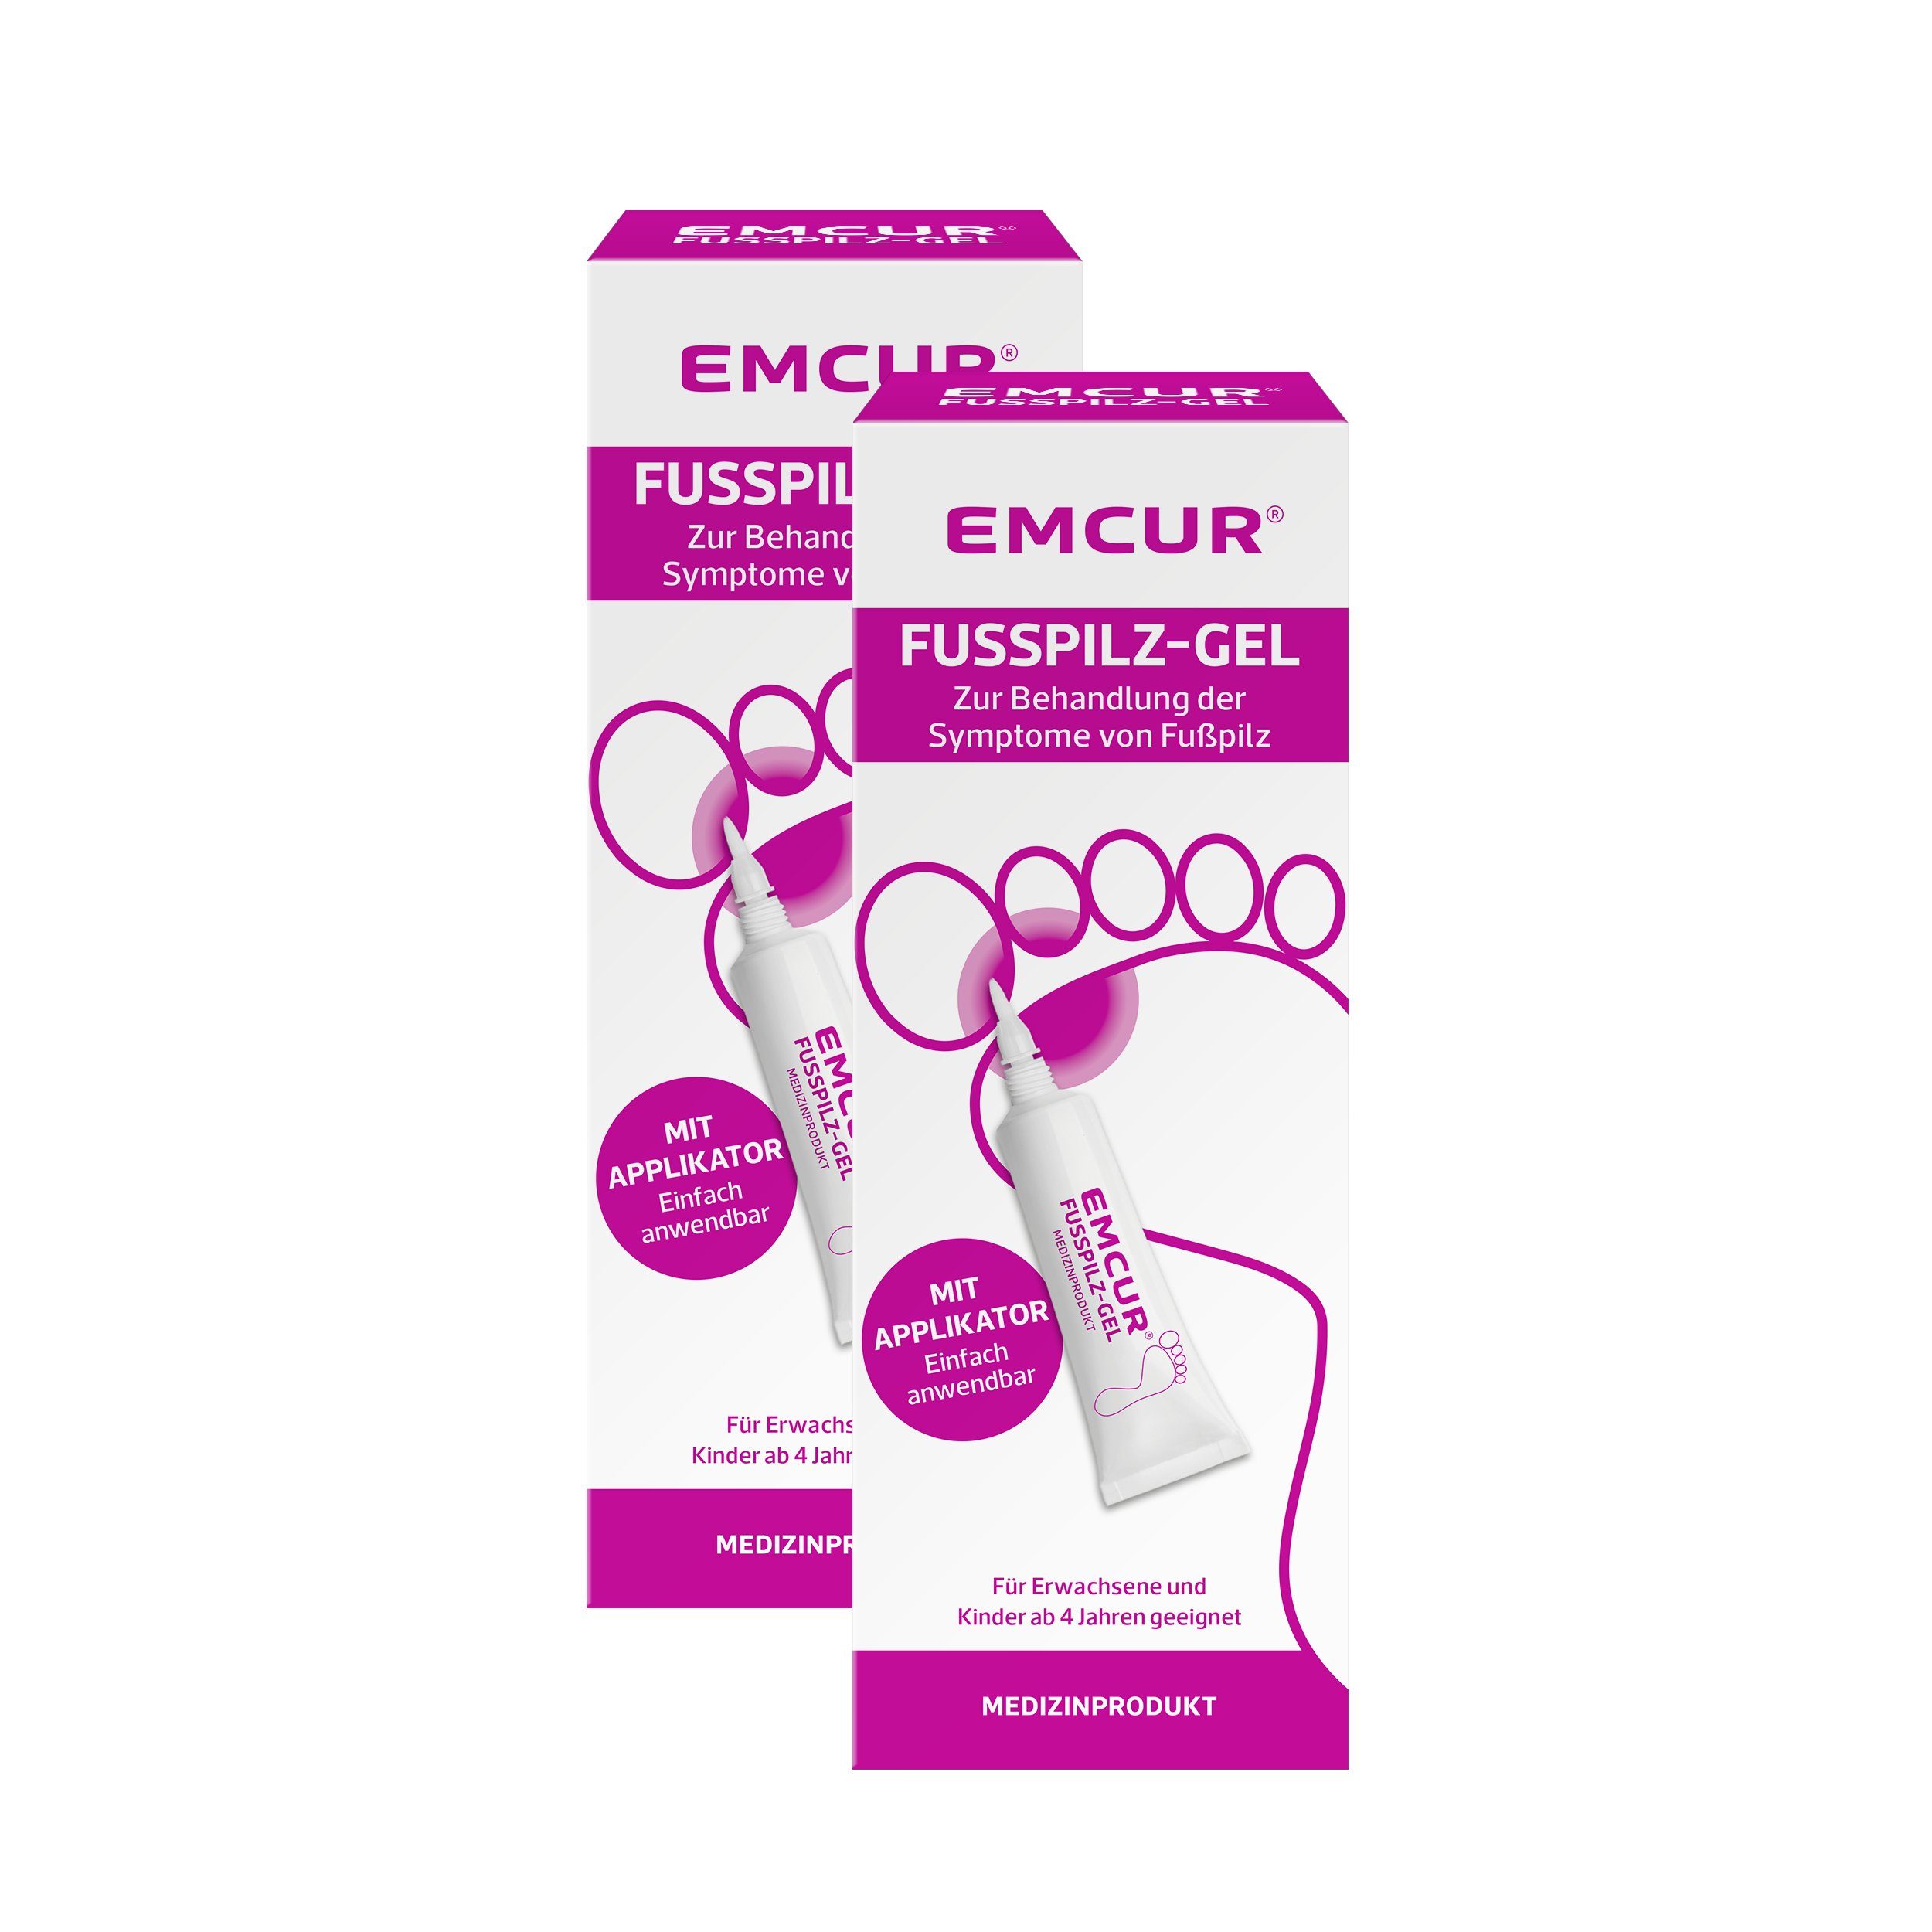 EMCUR Fußgel Fußpilz-Gel, Behandlung gegen Fußpilz, mindert Juckreiz und Rötungen, 2 x 15 ml